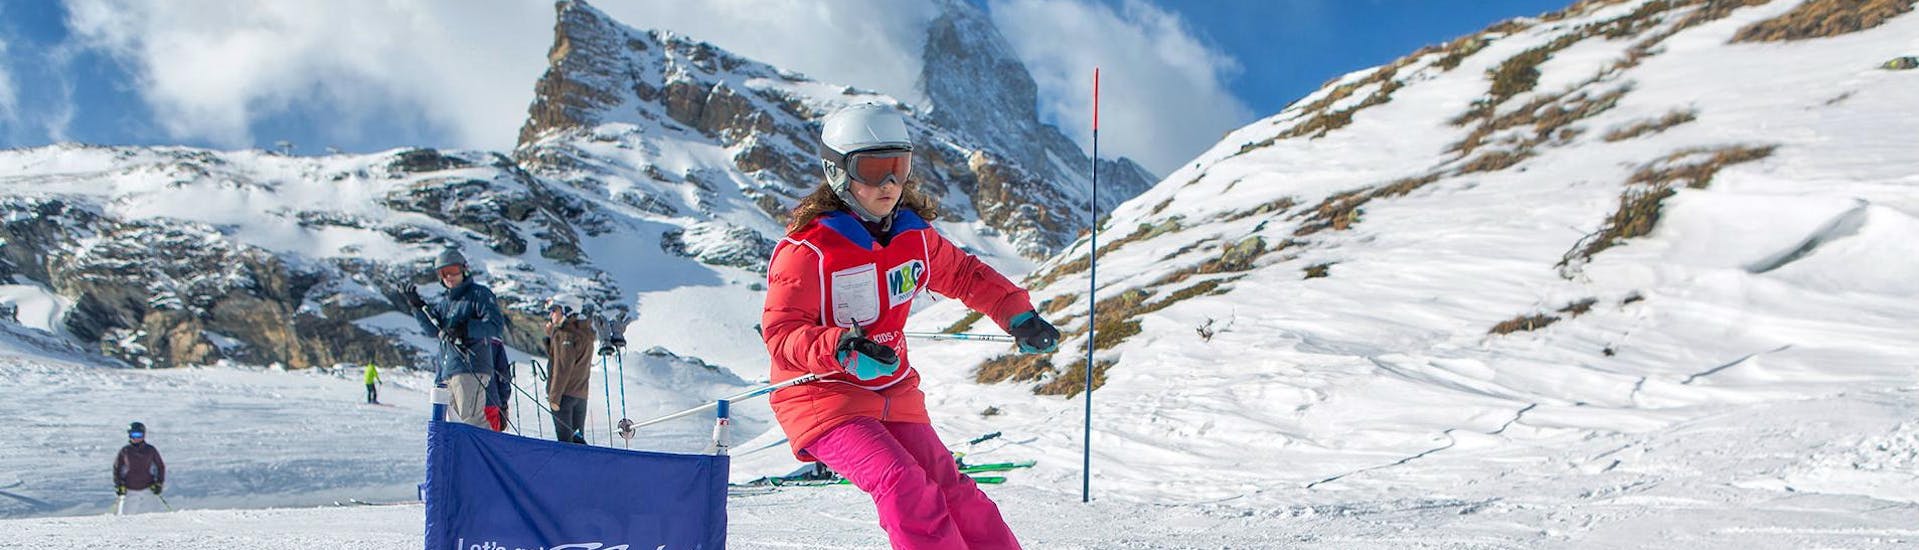 Cours de ski Enfants (5-12 ans) pour Expérimentés.